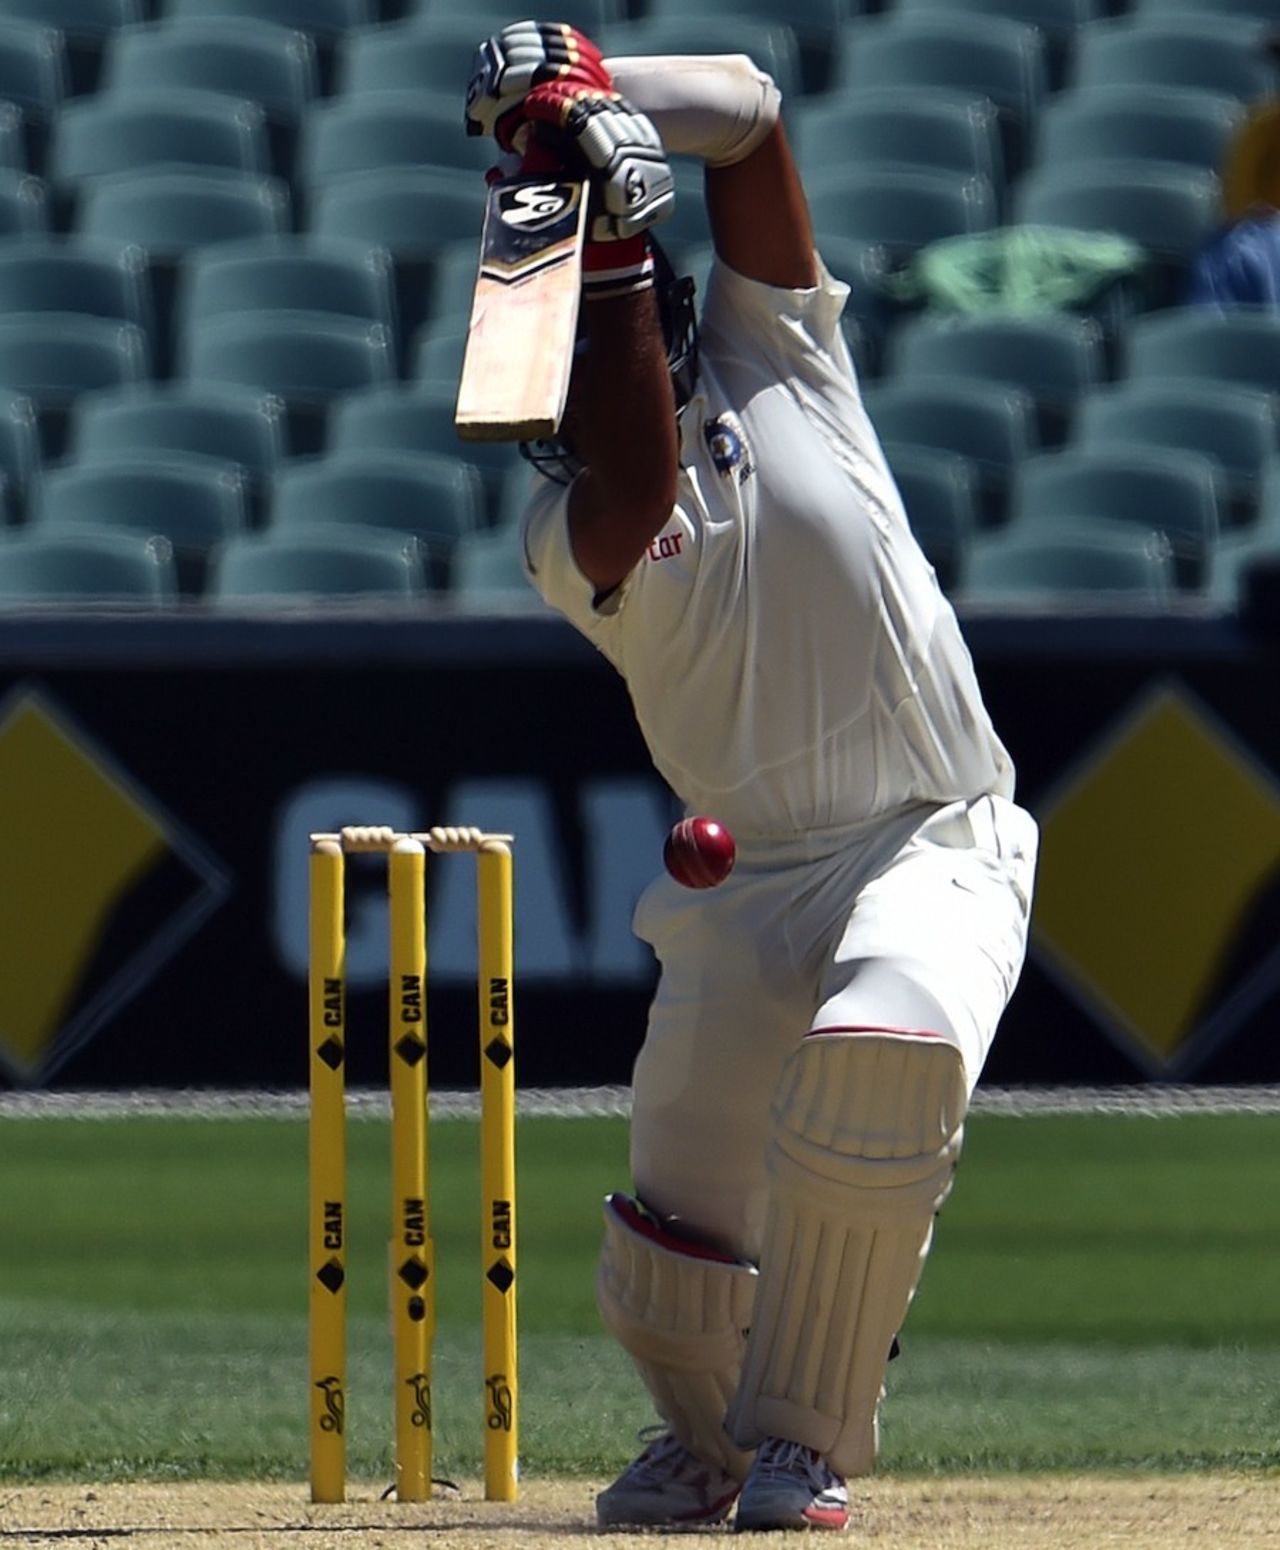 Cheteshwar Pujara drives, Australia v India, 1st Test, Adelaide, 3rd day, December 11, 2014